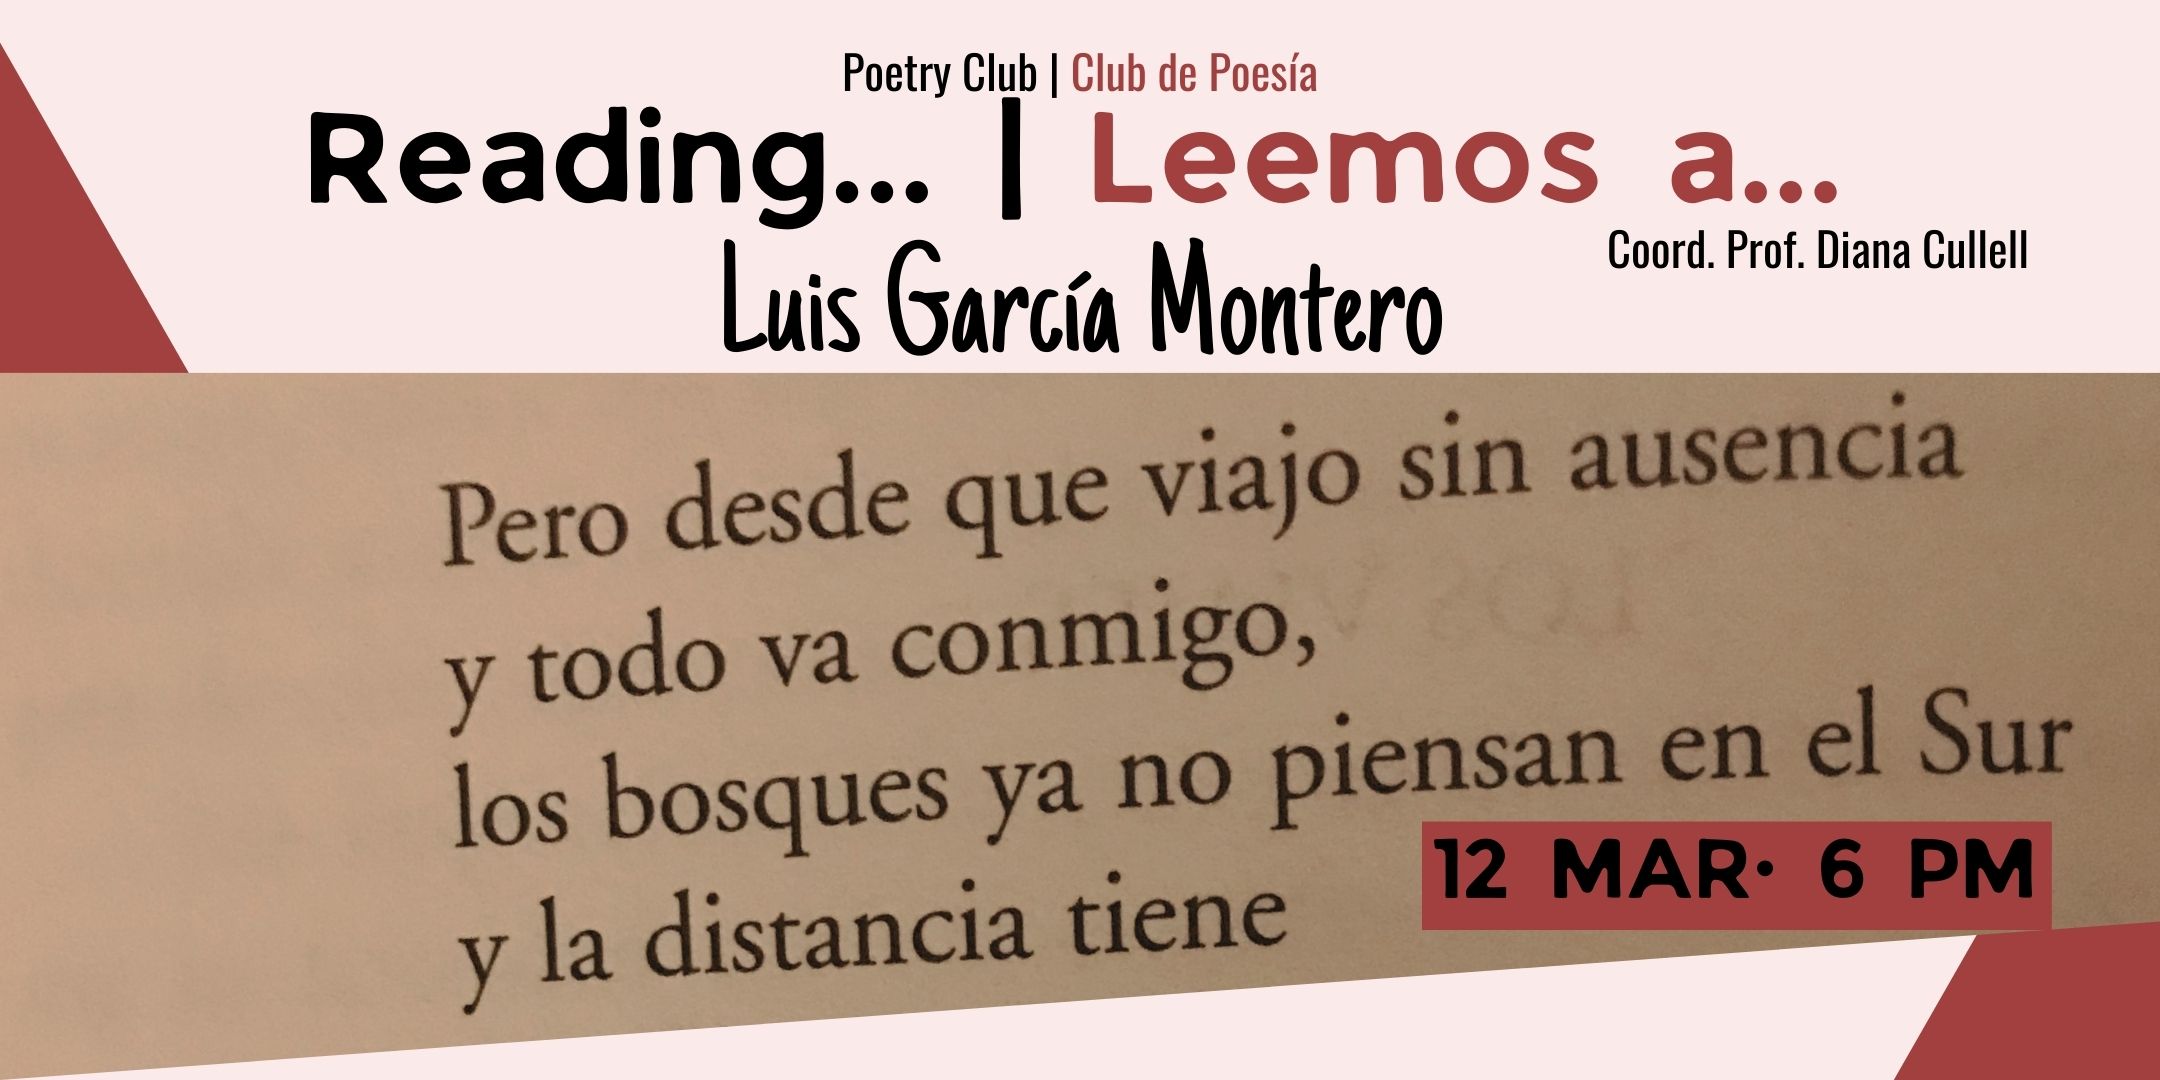 Leemos a Luis García Montero